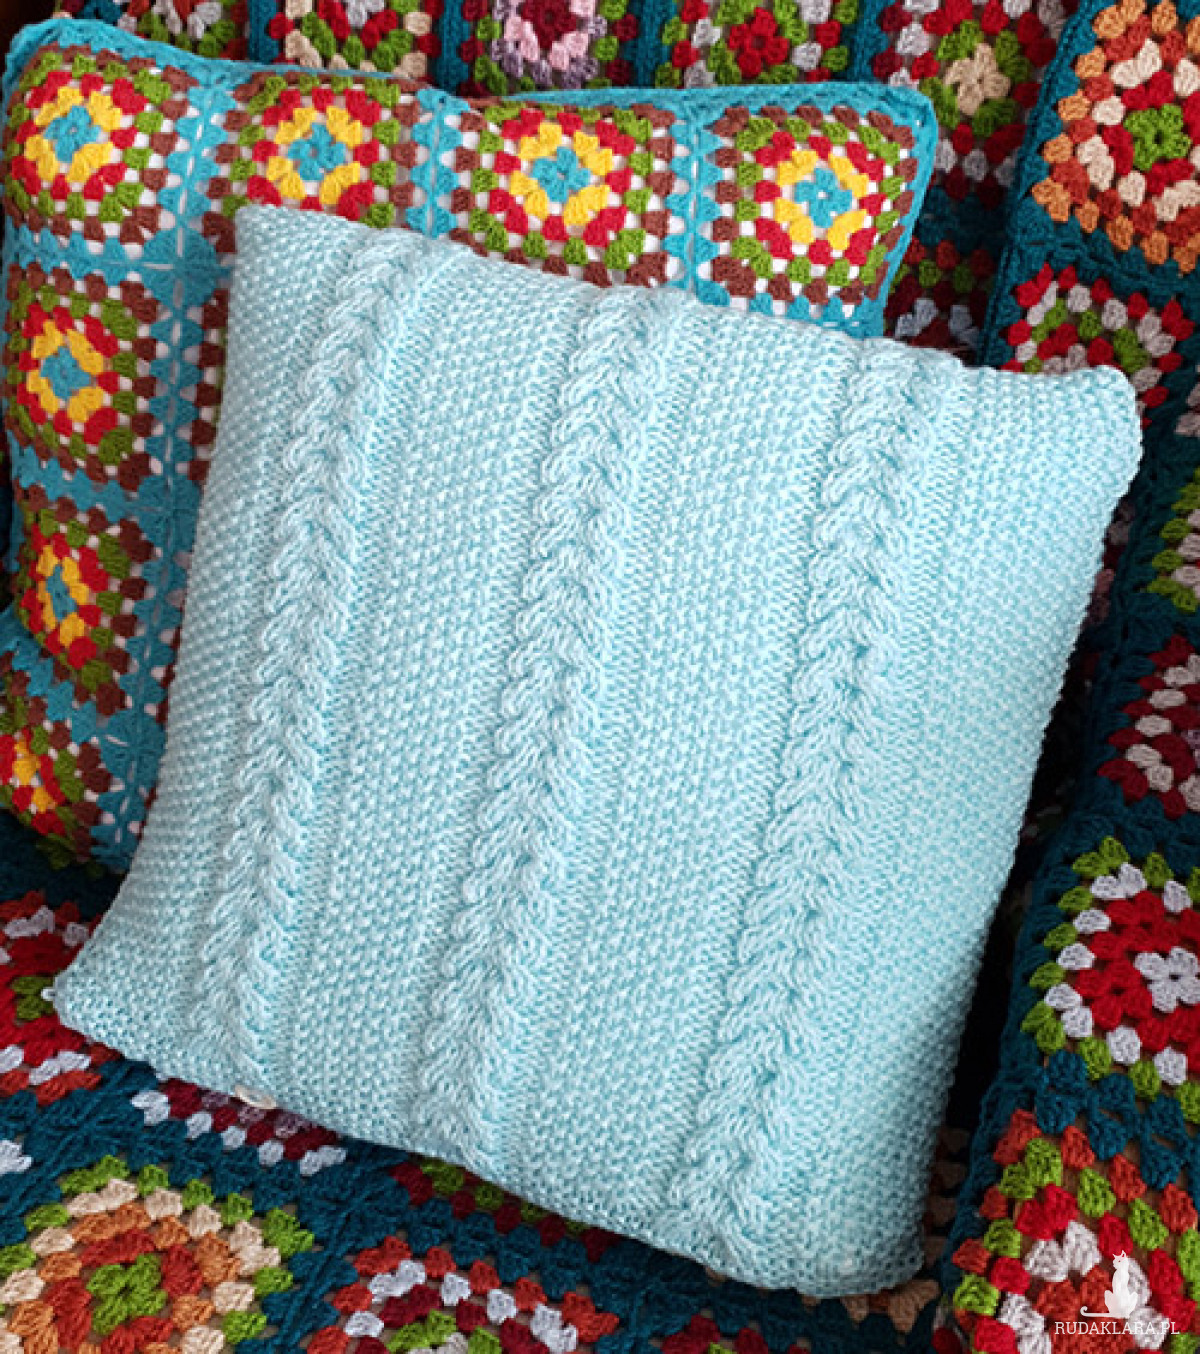 121. poszewka na poduszkę wykonana na drutach